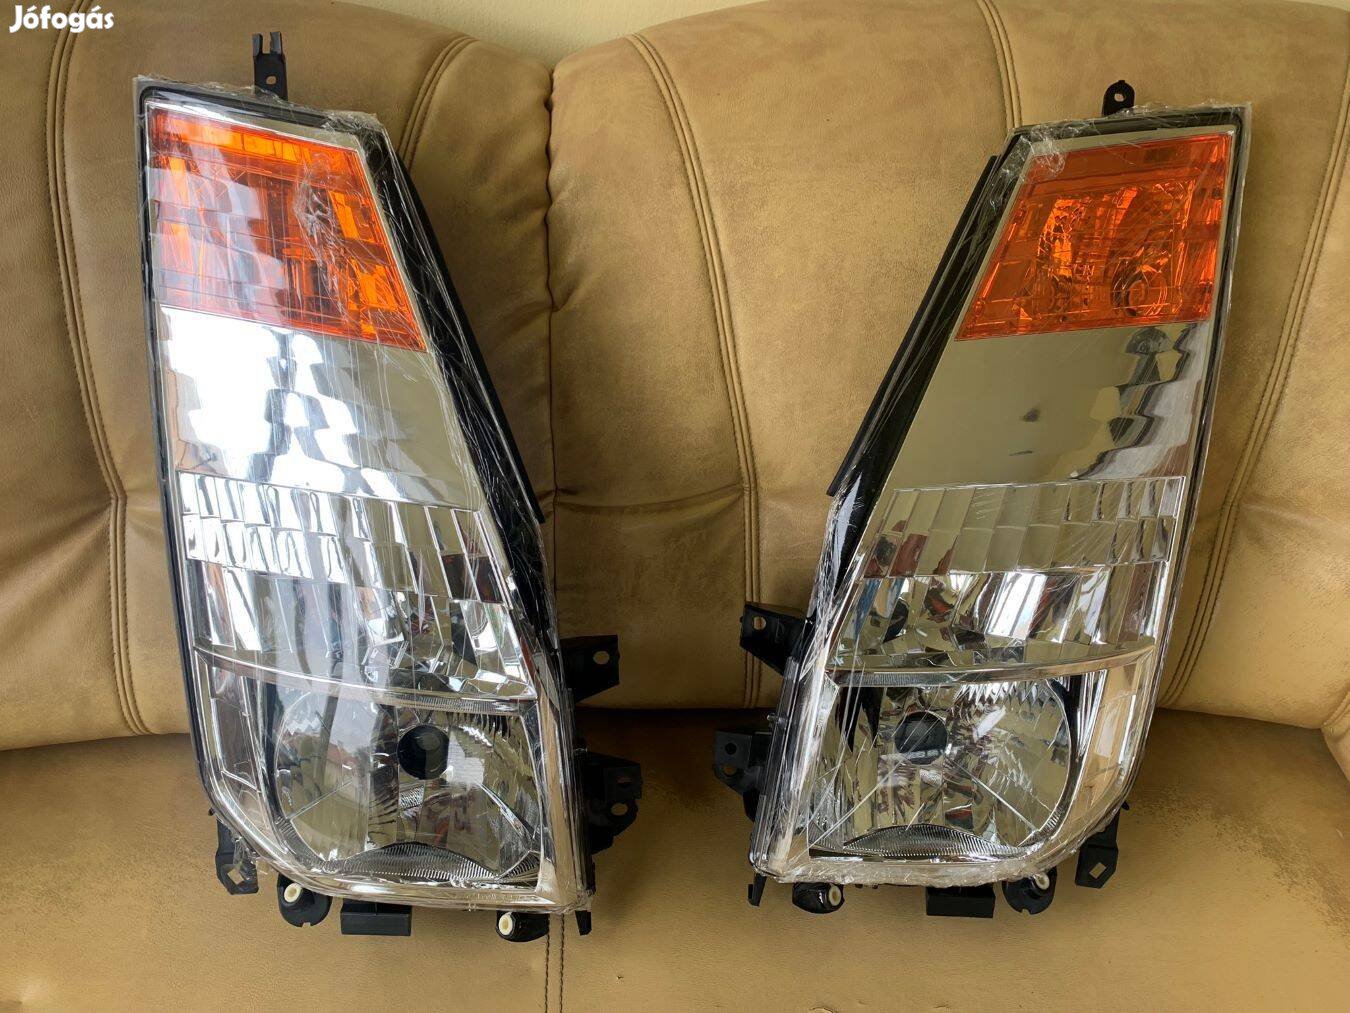 Eladó Nissan Cabstar 2006- alkatrészek, új fényszóró lámpa